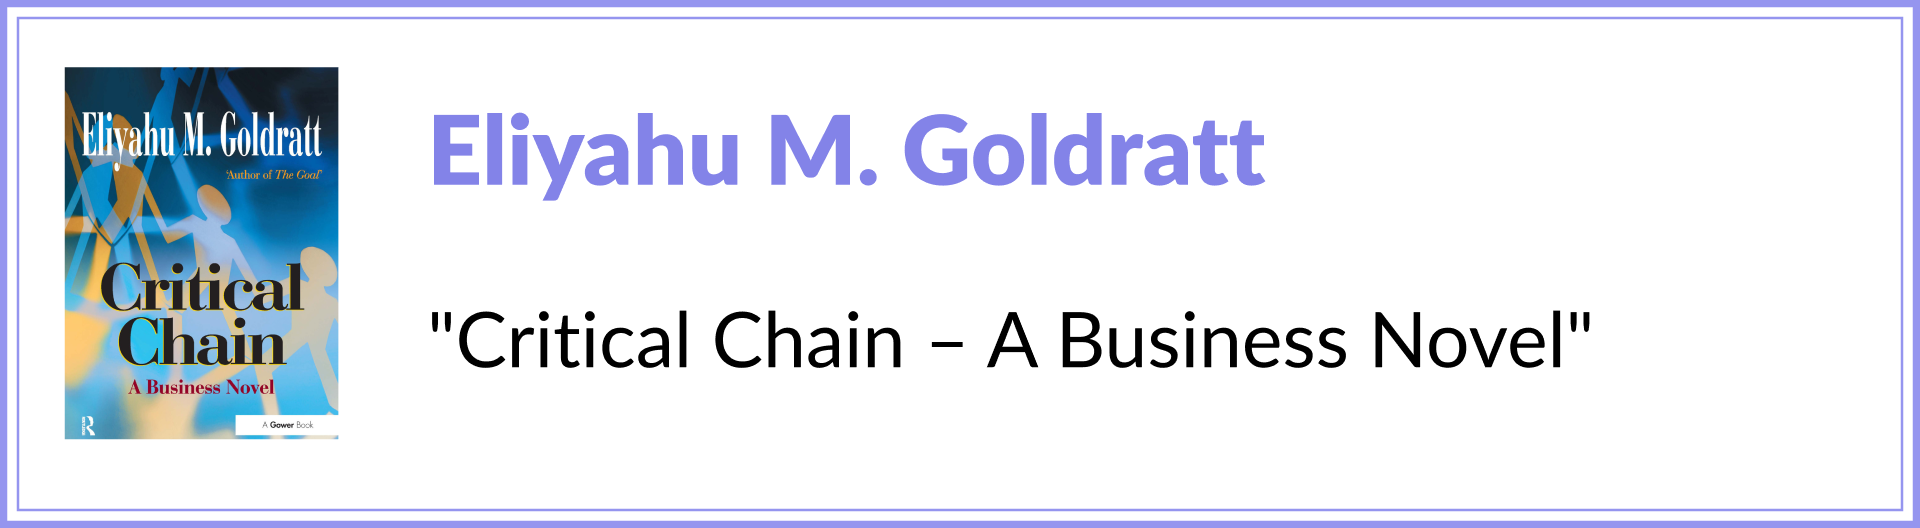 Eliyahu M Goldratt “Critical Chain: A Business Novel”